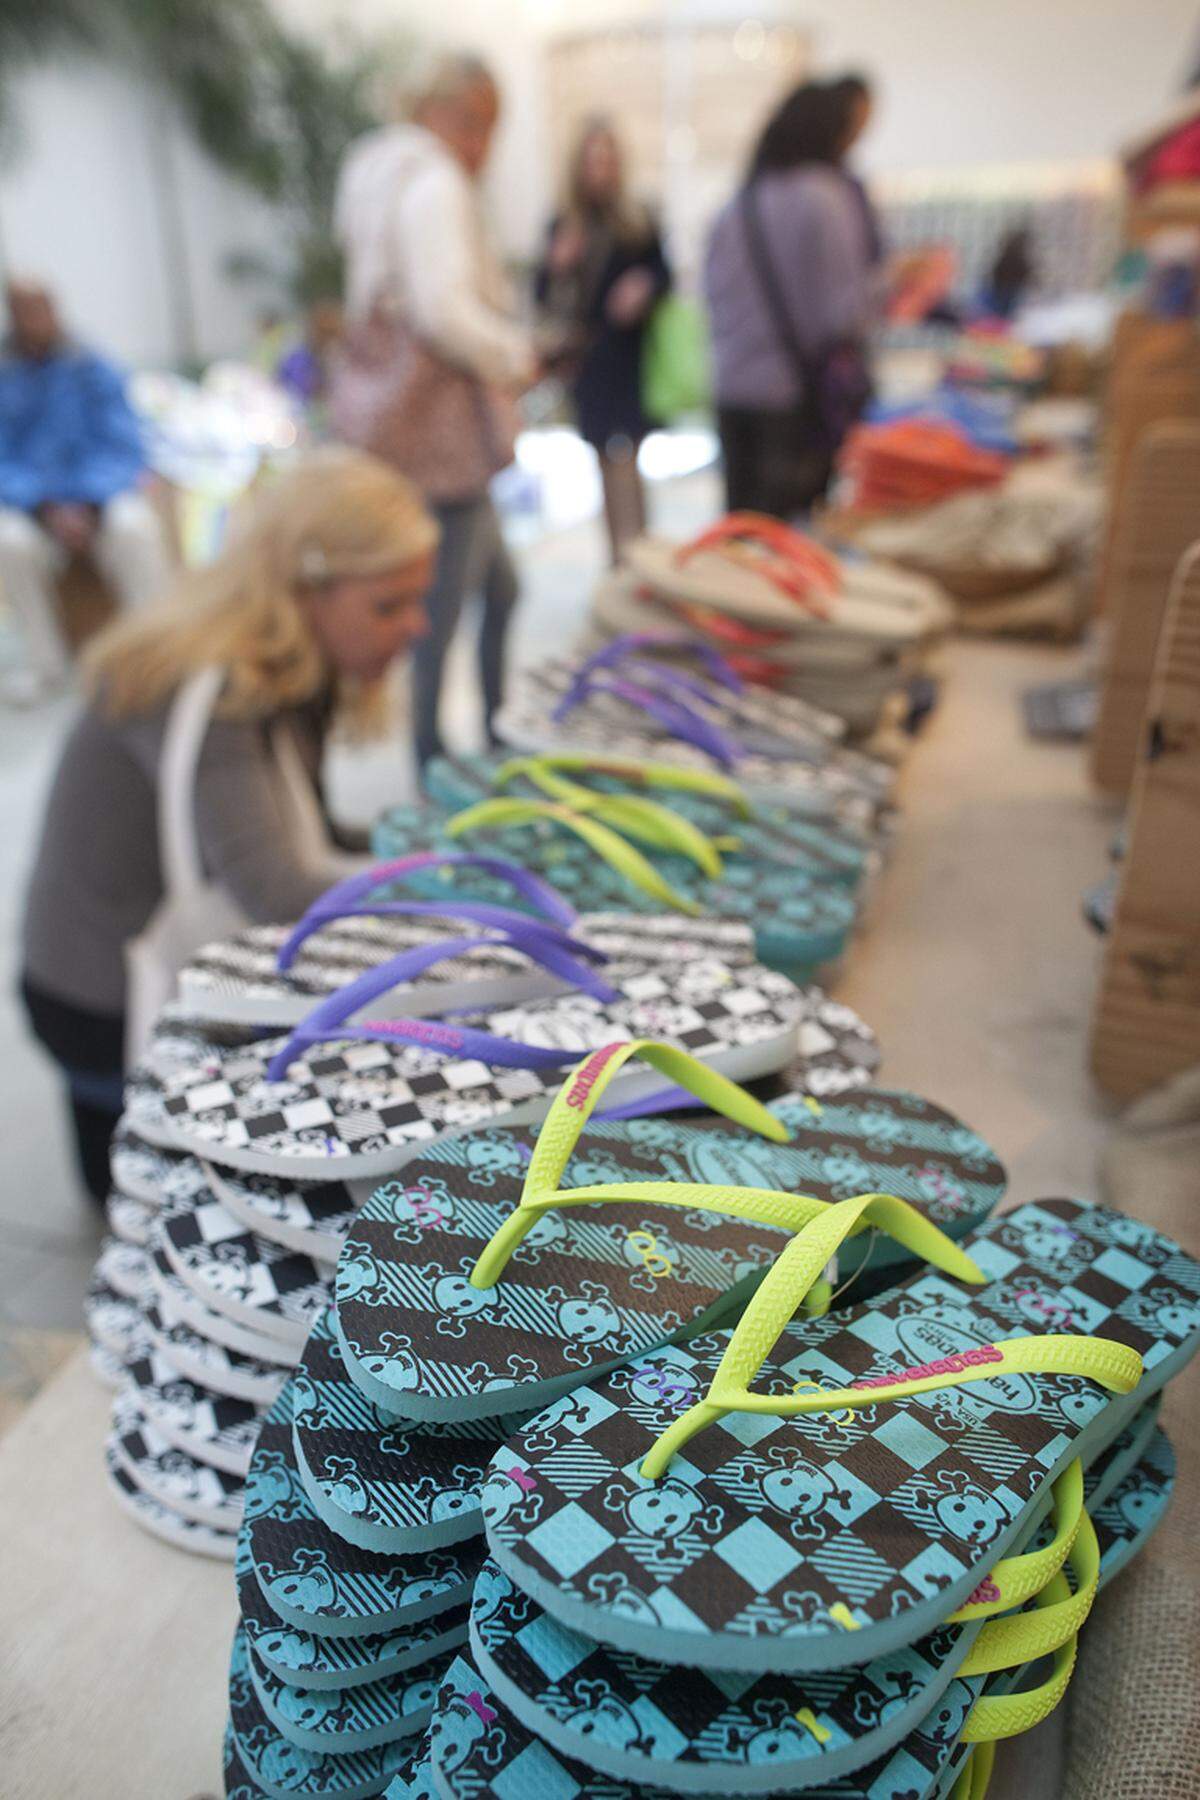 Havaiana wurde 1962 ins Leben gerufen. Inspiration waren typisch japanischen Reisstroh-Schuhe namens Zori. Die Zusammensetzung der berühmten Flipflops von Havaiana besteht aus einer geheimen Kunststoffmischung. Im Unterschied zu anderen Herstellern setzen die Brasilianer auf genoppten Kunsstoff und kein Plastik.